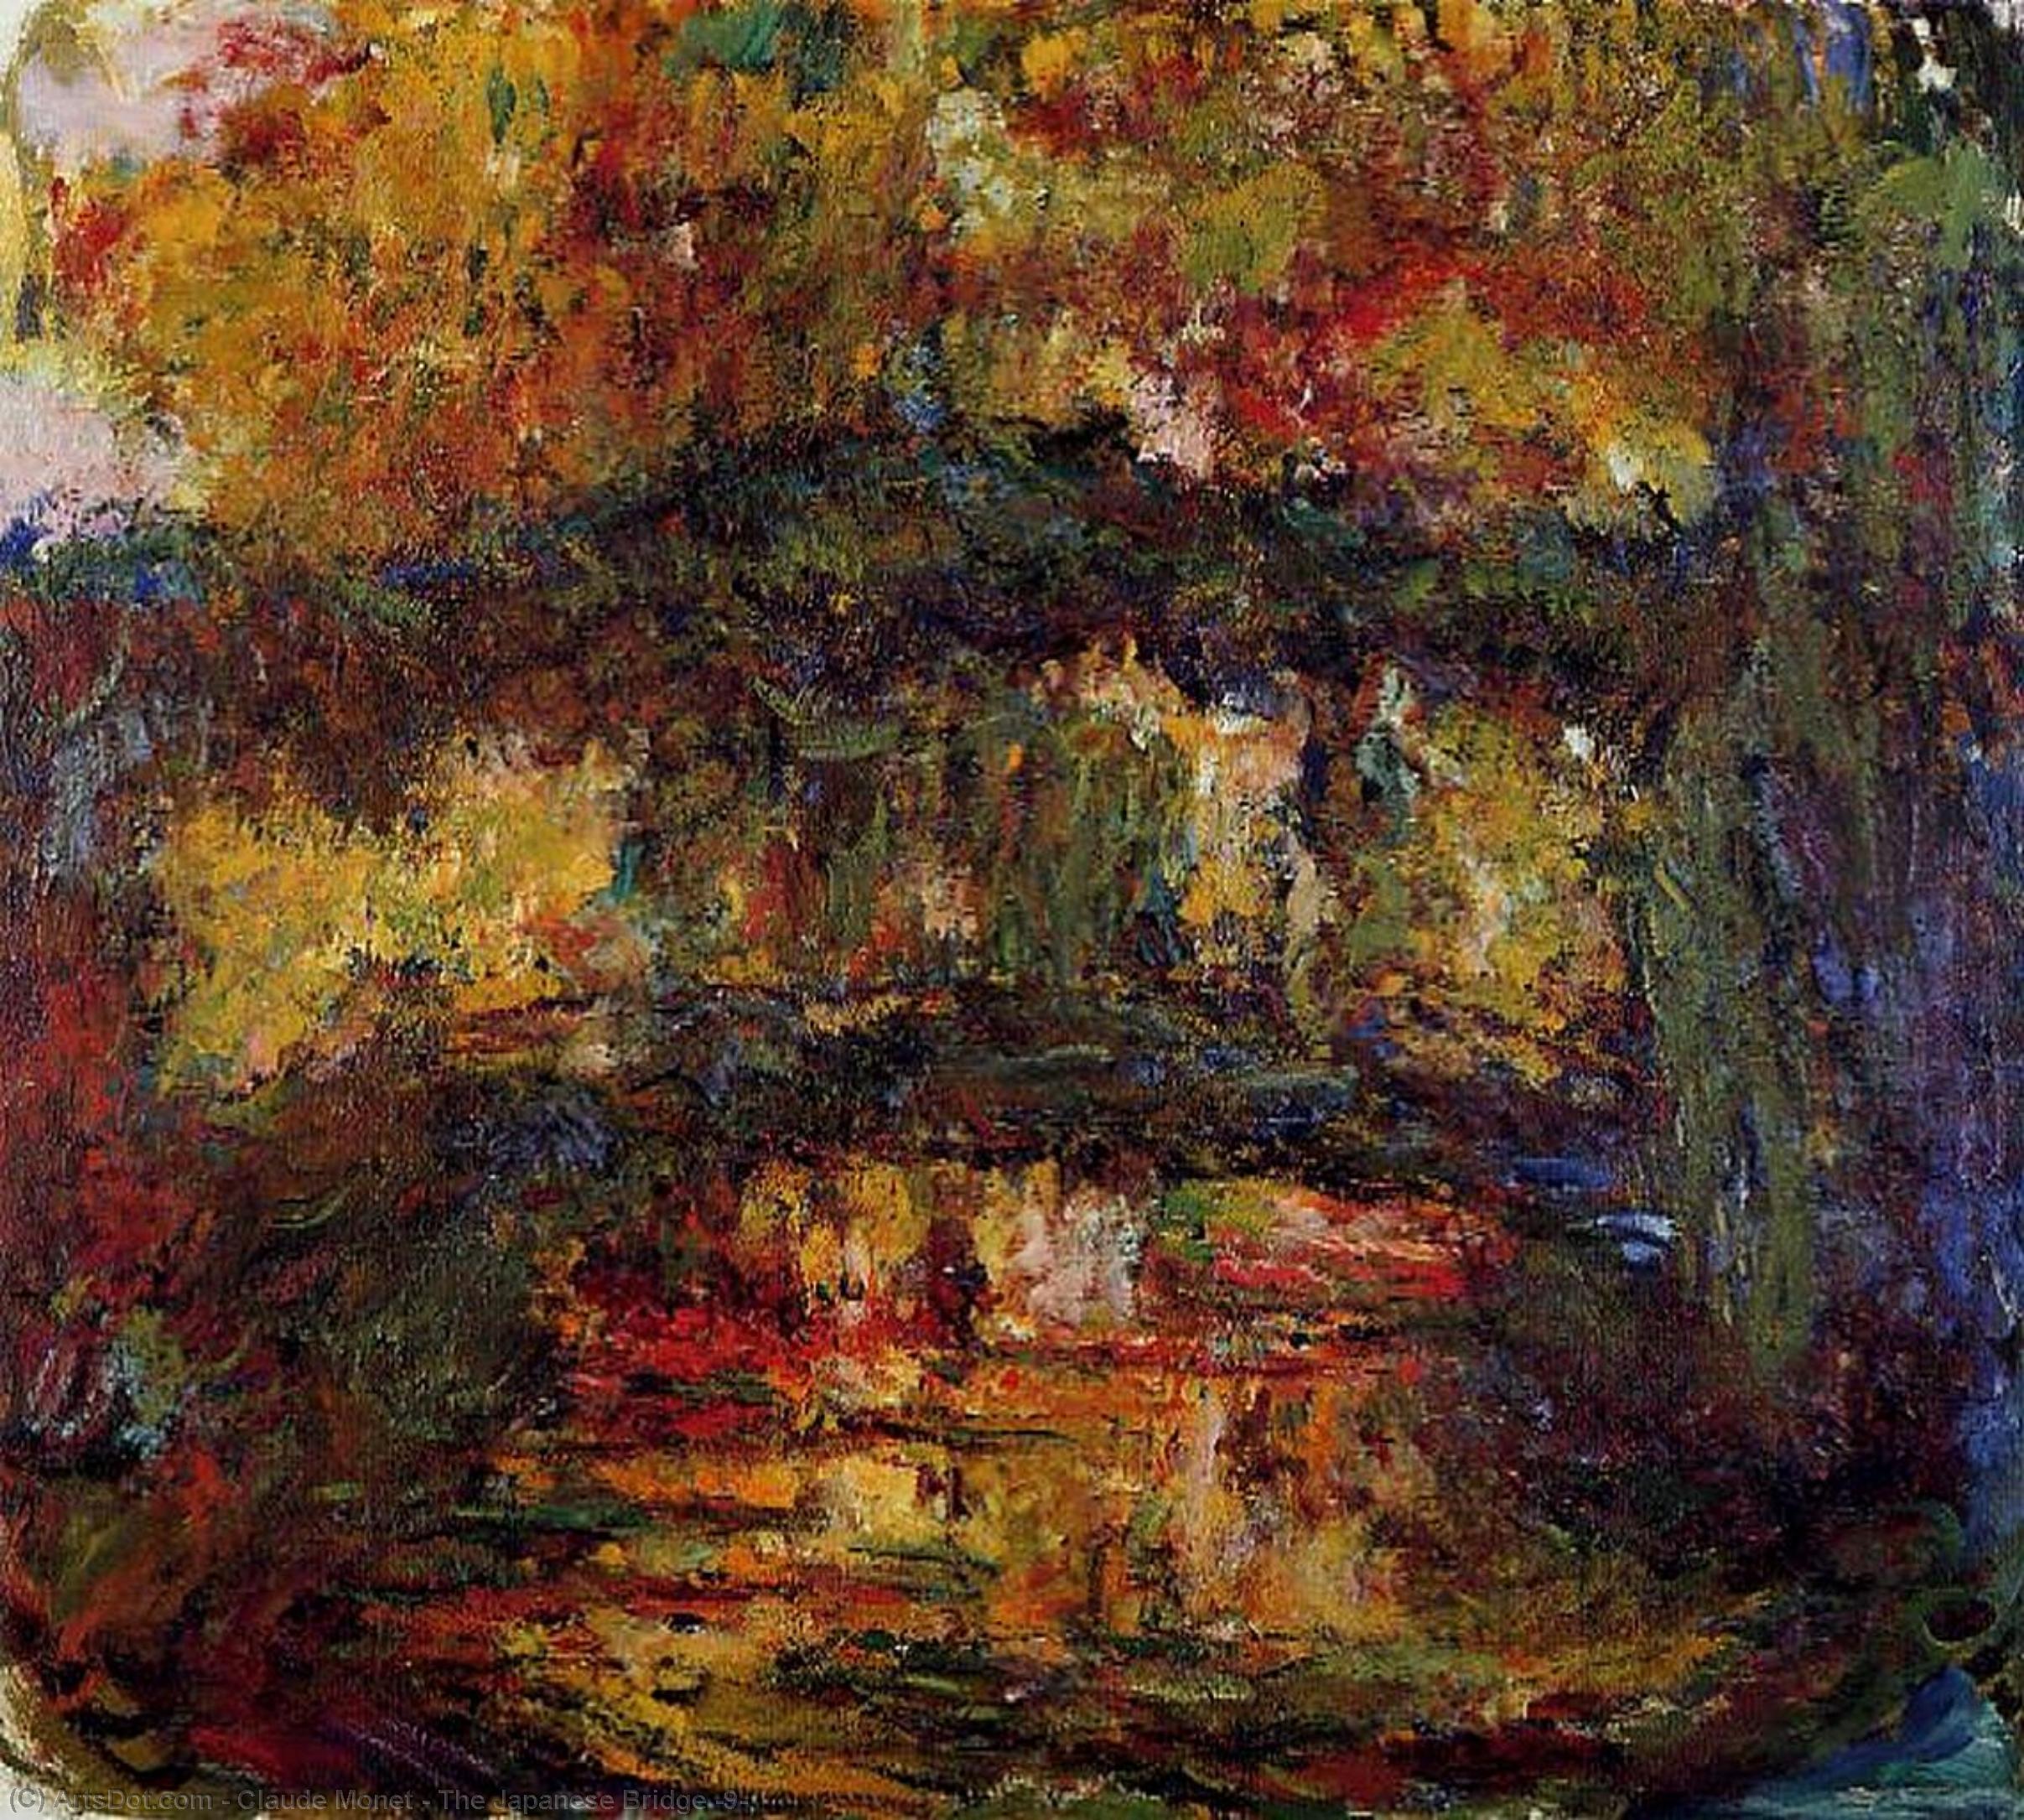 Comprar Reproducciones De Arte Del Museo El puente japonés (9), 1918 de Claude Monet (1840-1926, France) | ArtsDot.com